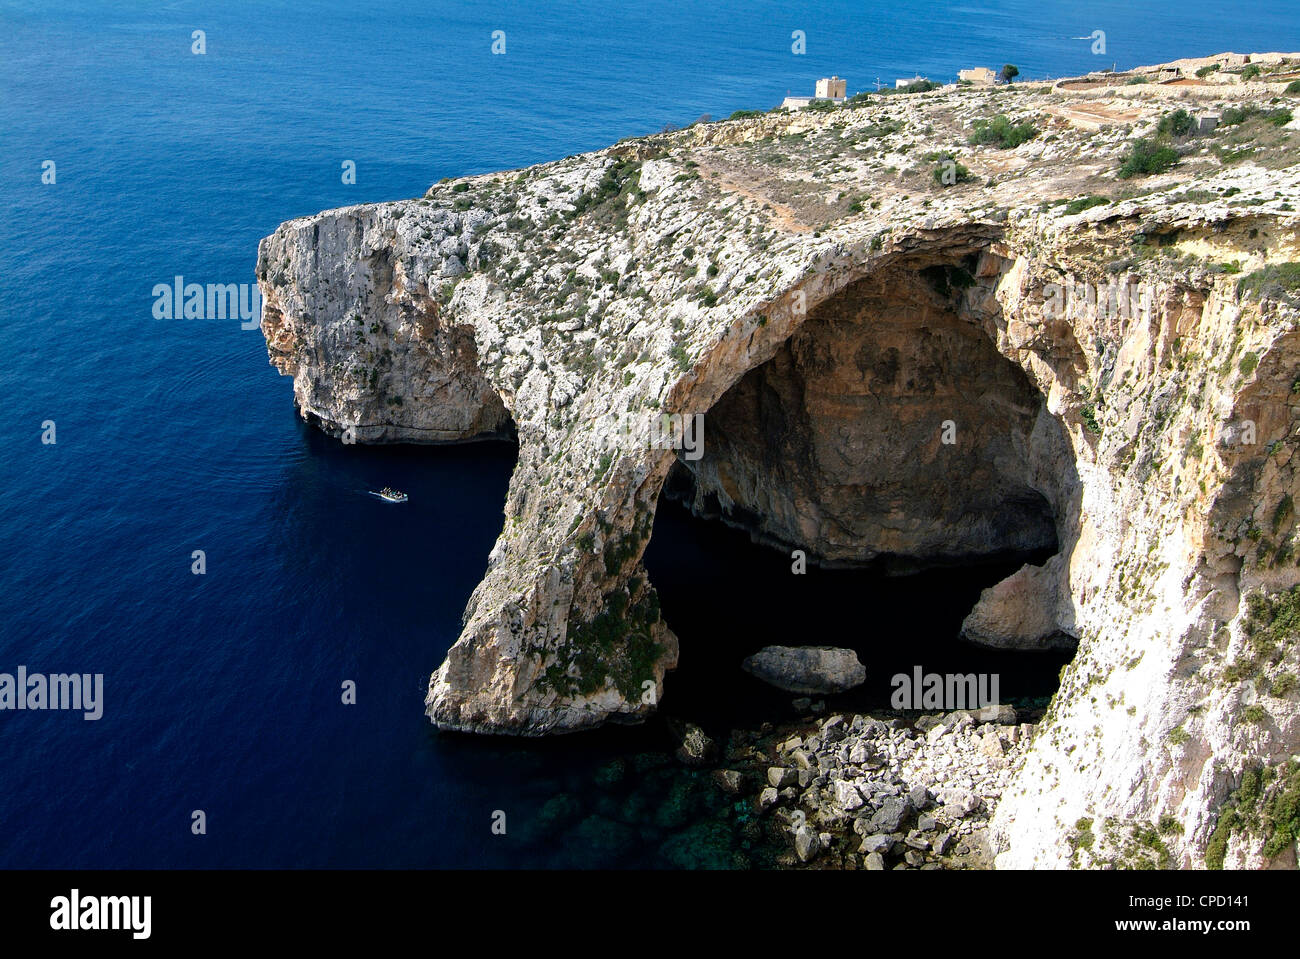 Blue Grotto near Zurrieq, Malta, Mediterranean, Europe Stock Photo